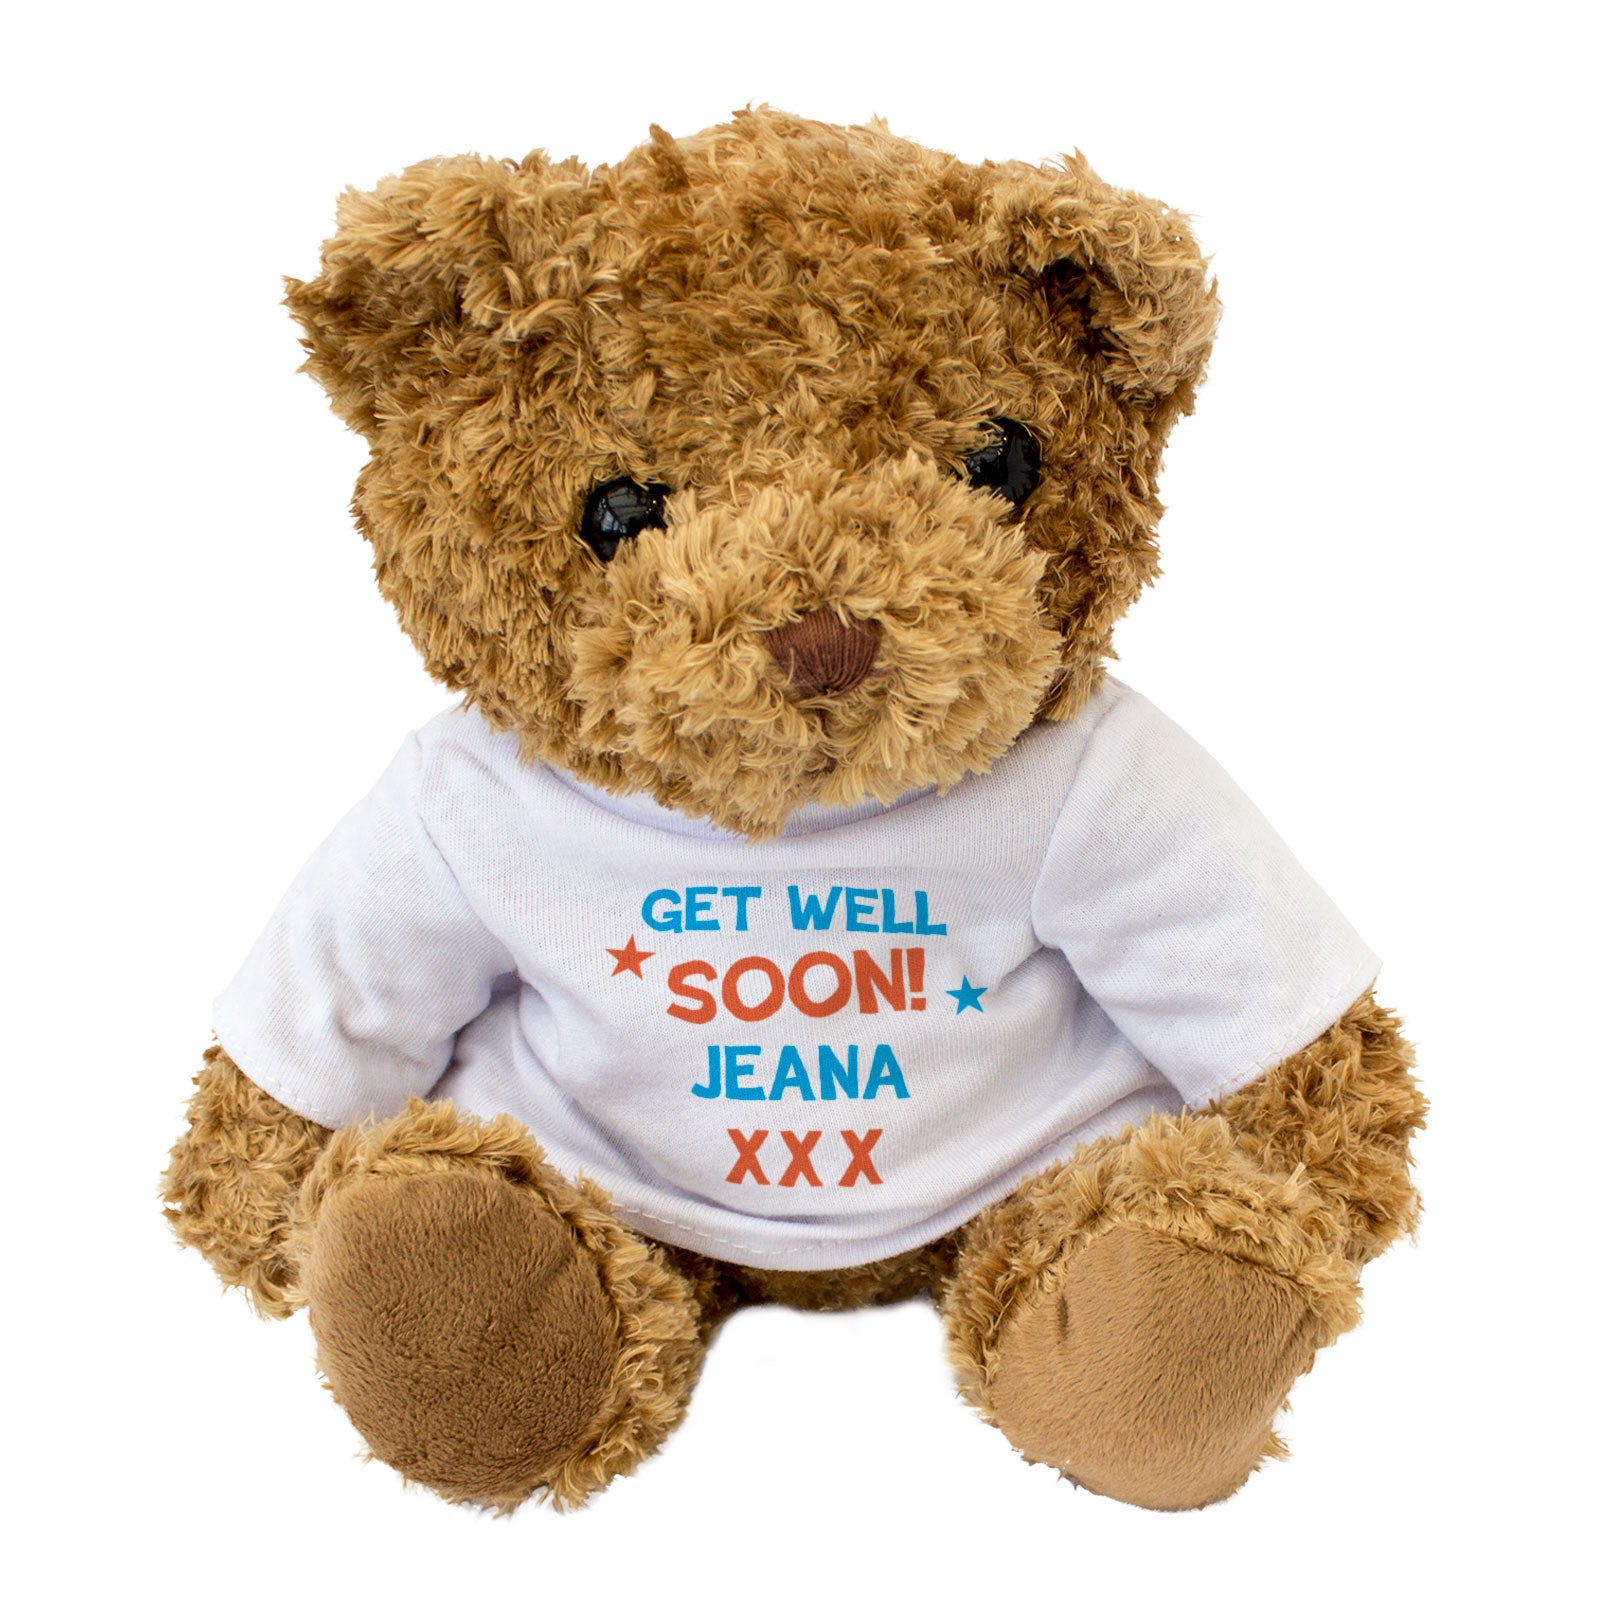 Get Well Soon Jeana - Teddy Bear